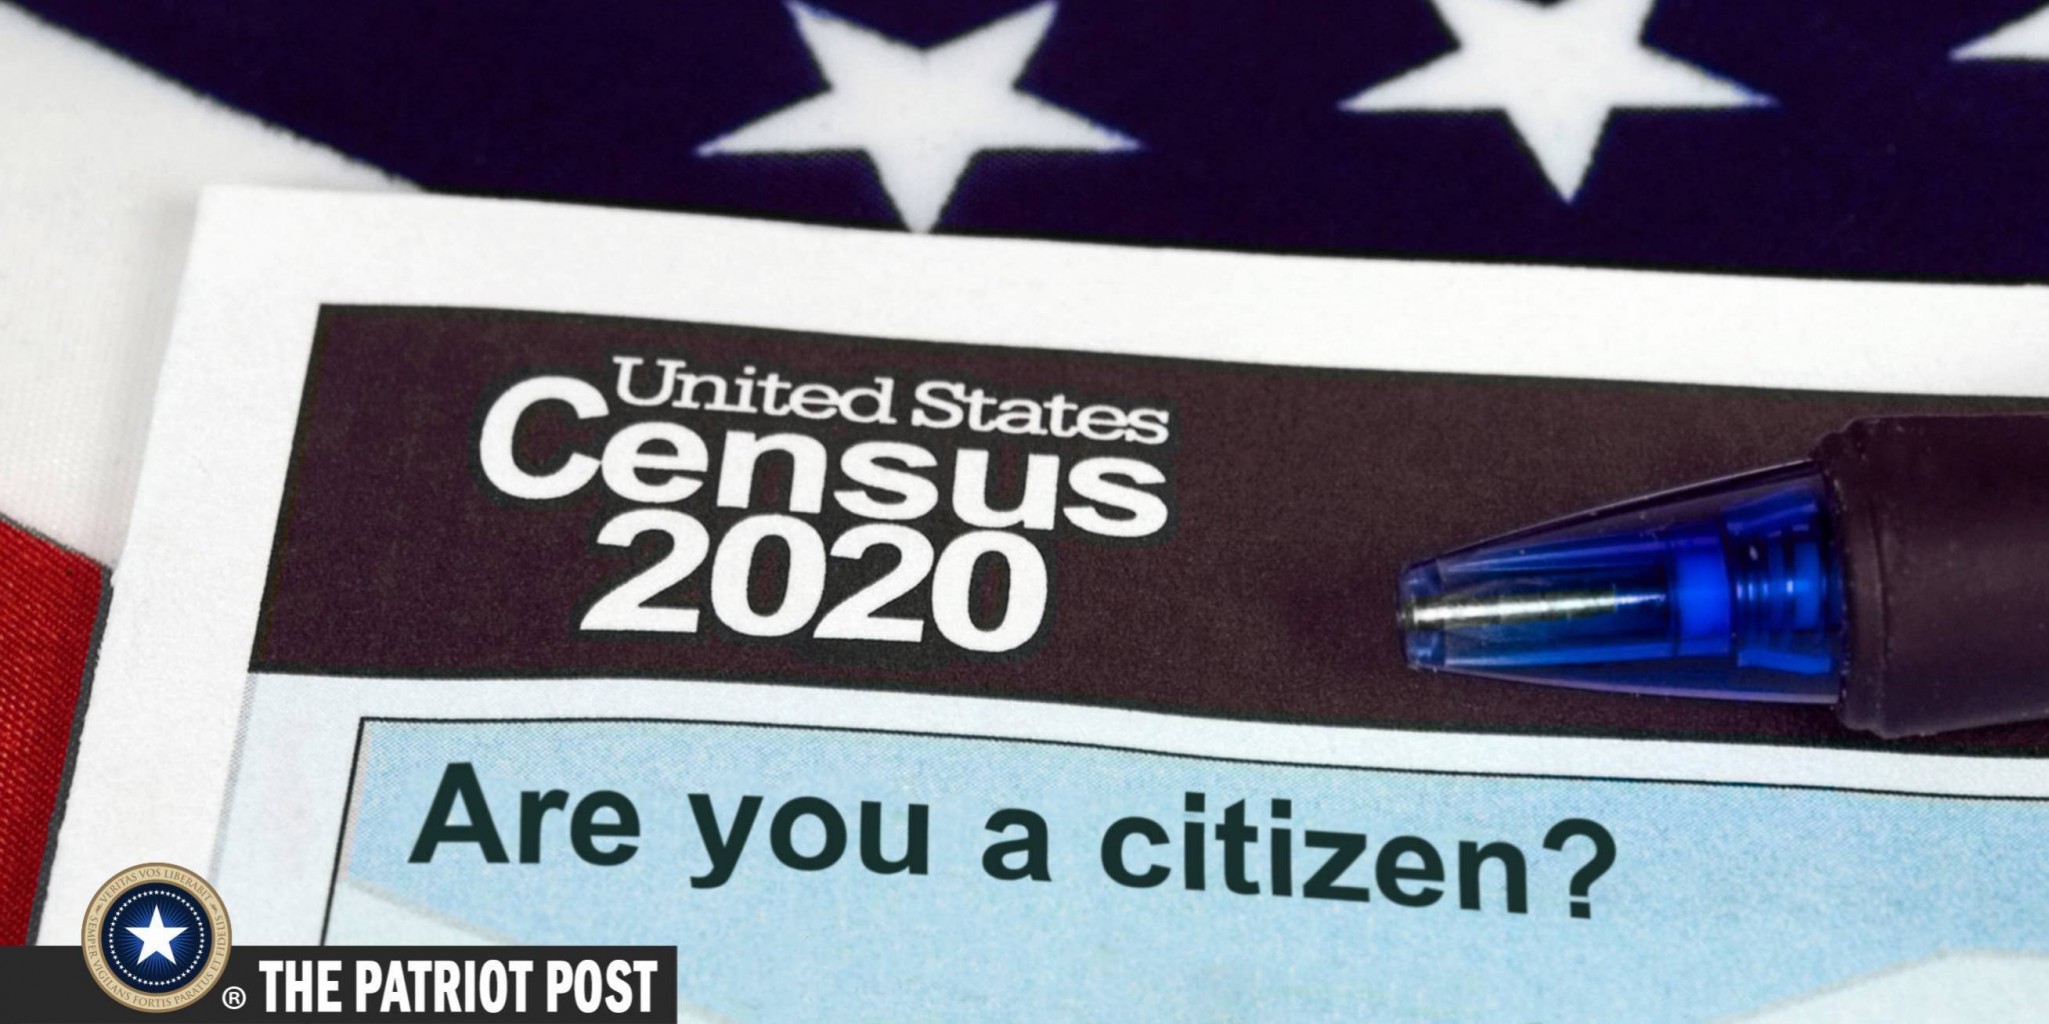 Presionan a la Subsecretaria de Comercio sobre la Inclusión de  la Pregunta de Ciudadanía en el Censo